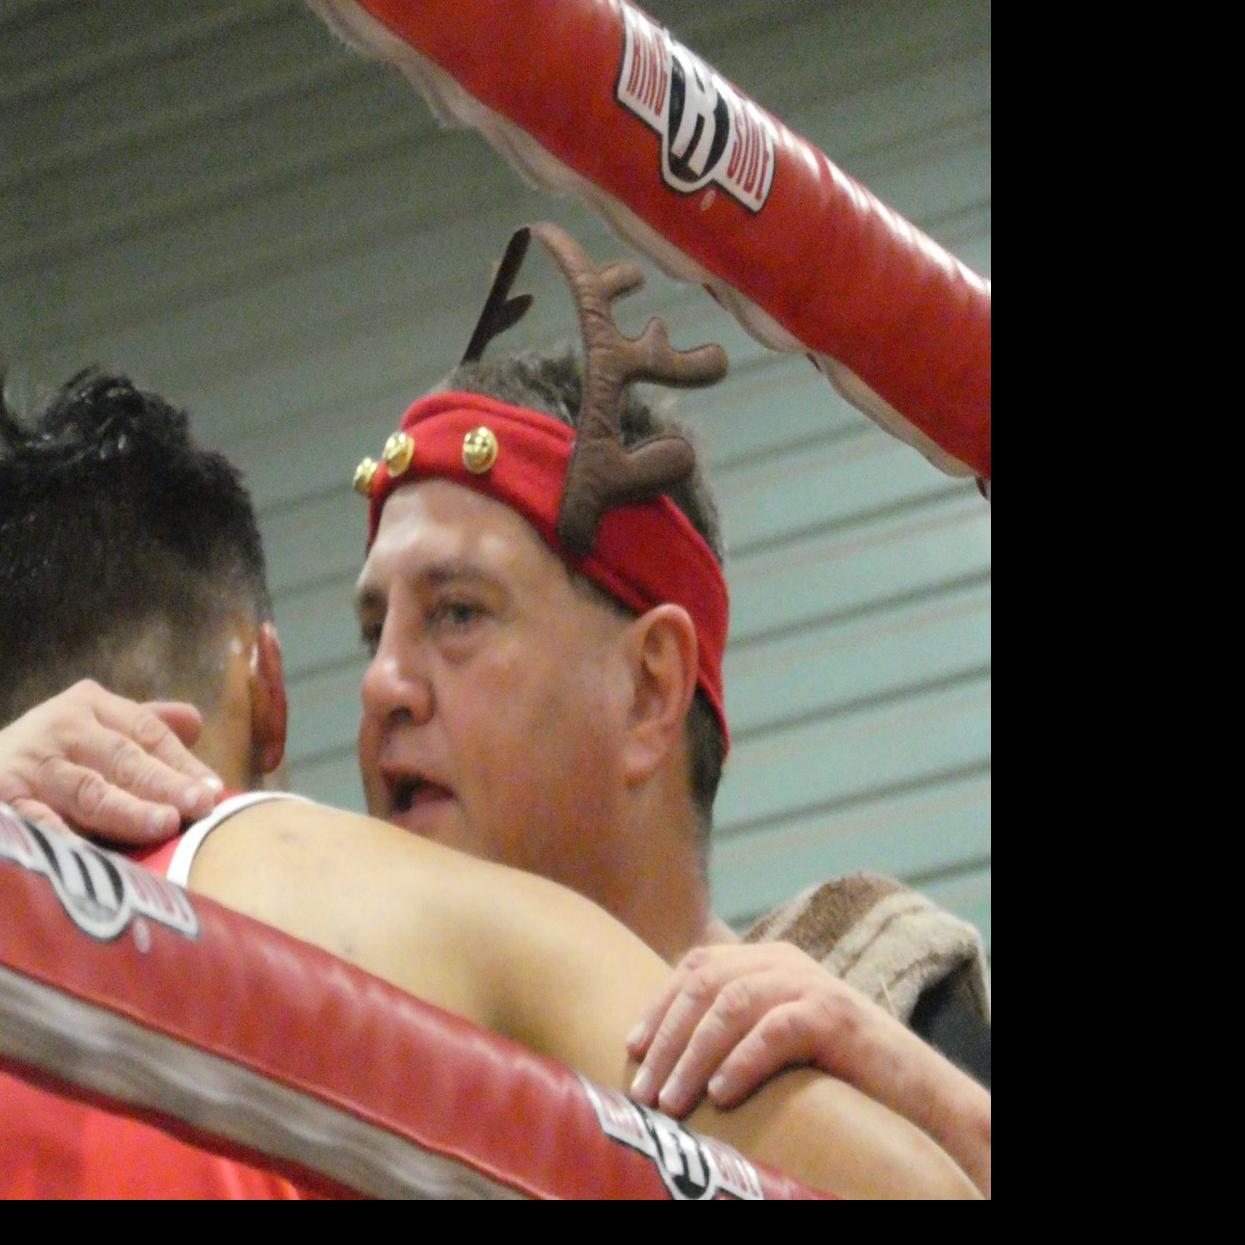 Ramirez set to make Tucson boxing debut, Local